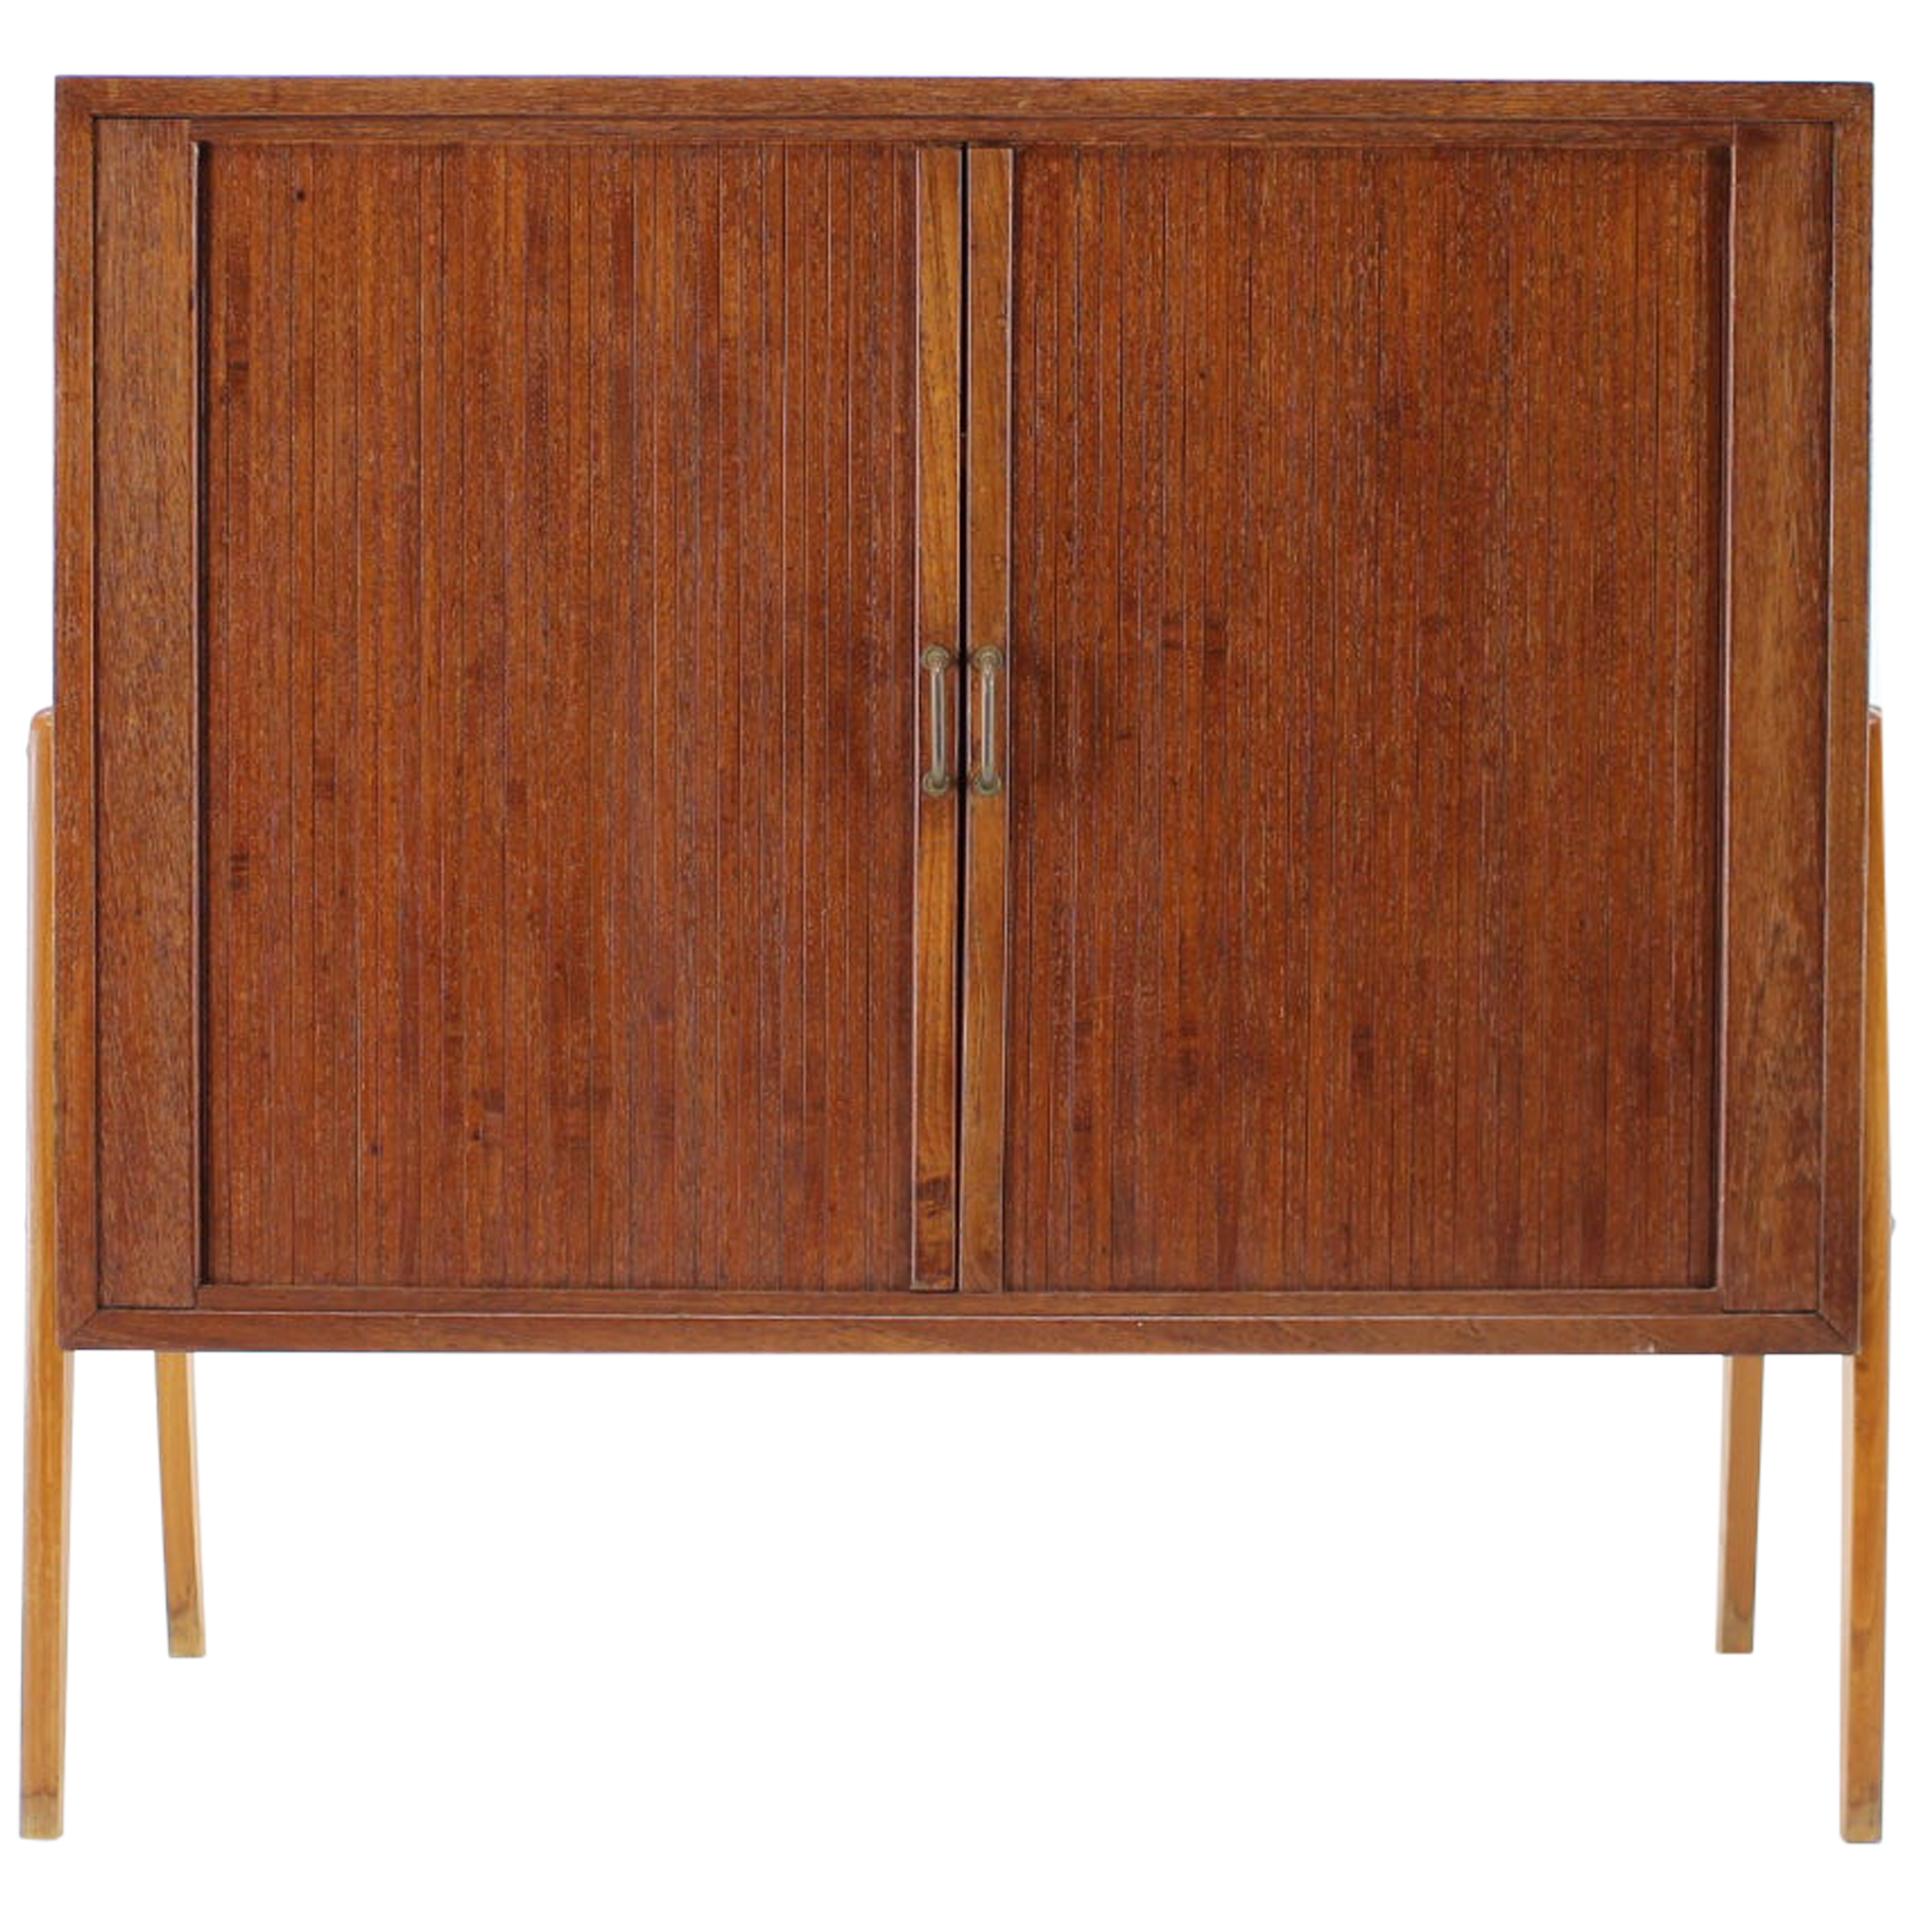 1960s Teak Tambour Doors Record Cabinet, Denmark